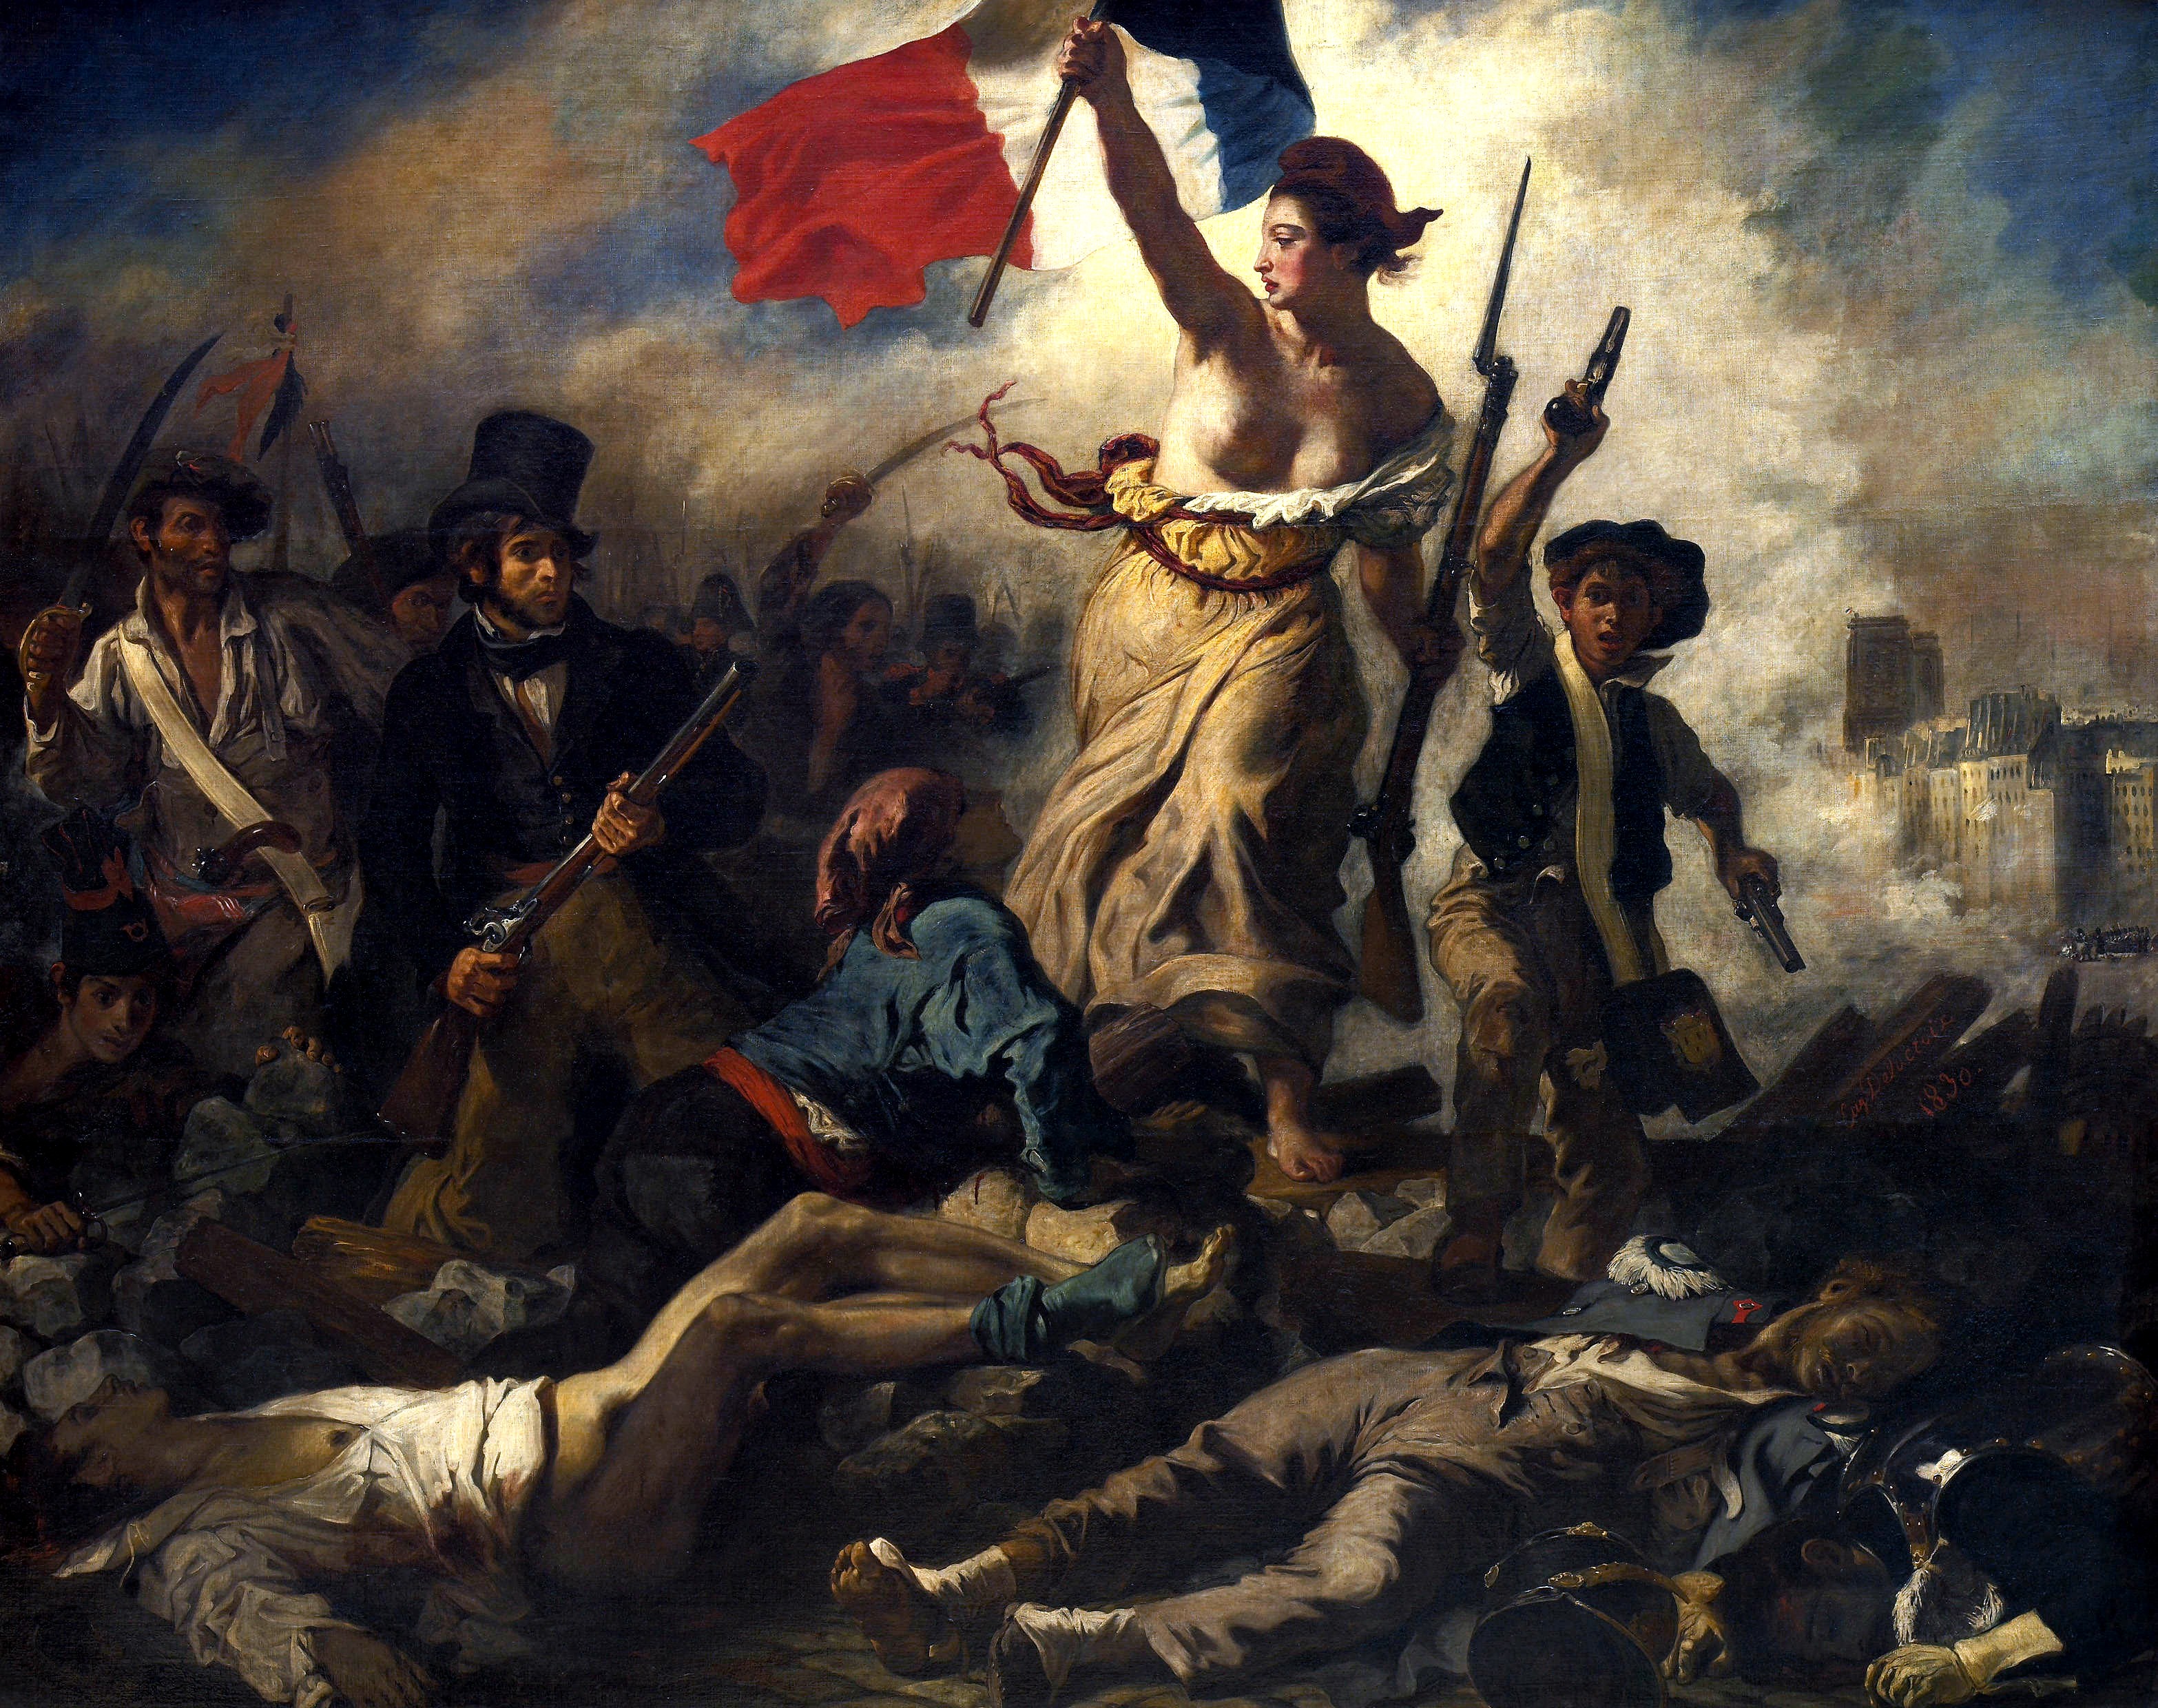 Eugne Delacroix, Liberty Leading the People, 28 July 1830 (1830, Oil on canvas, Louvre Museum, Paris)